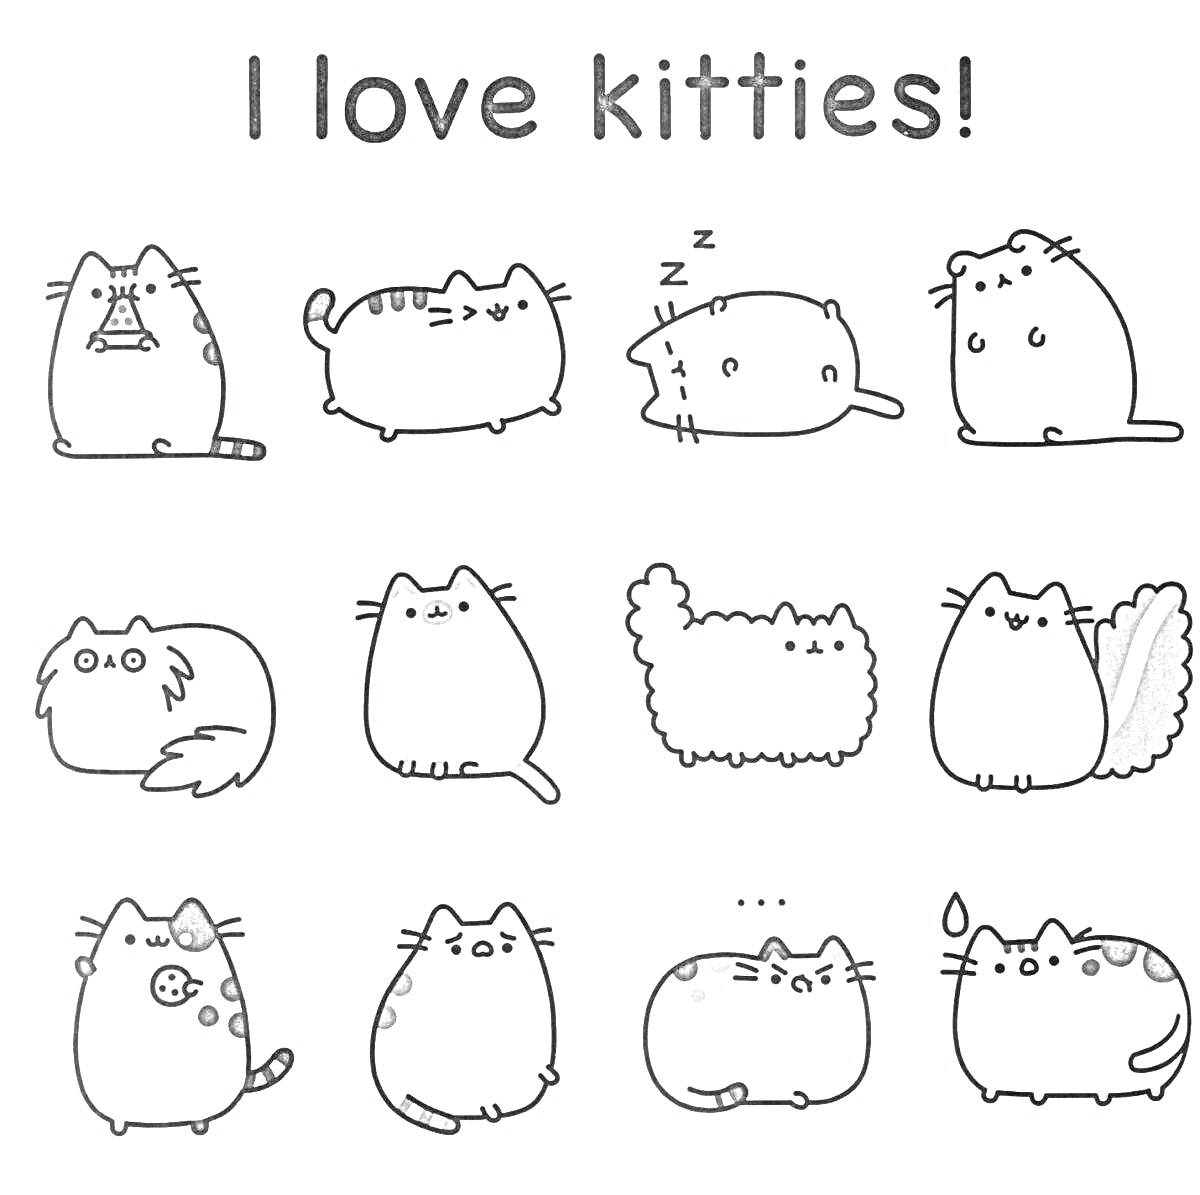 Раскраска I love kitties! Кошки в различных позах